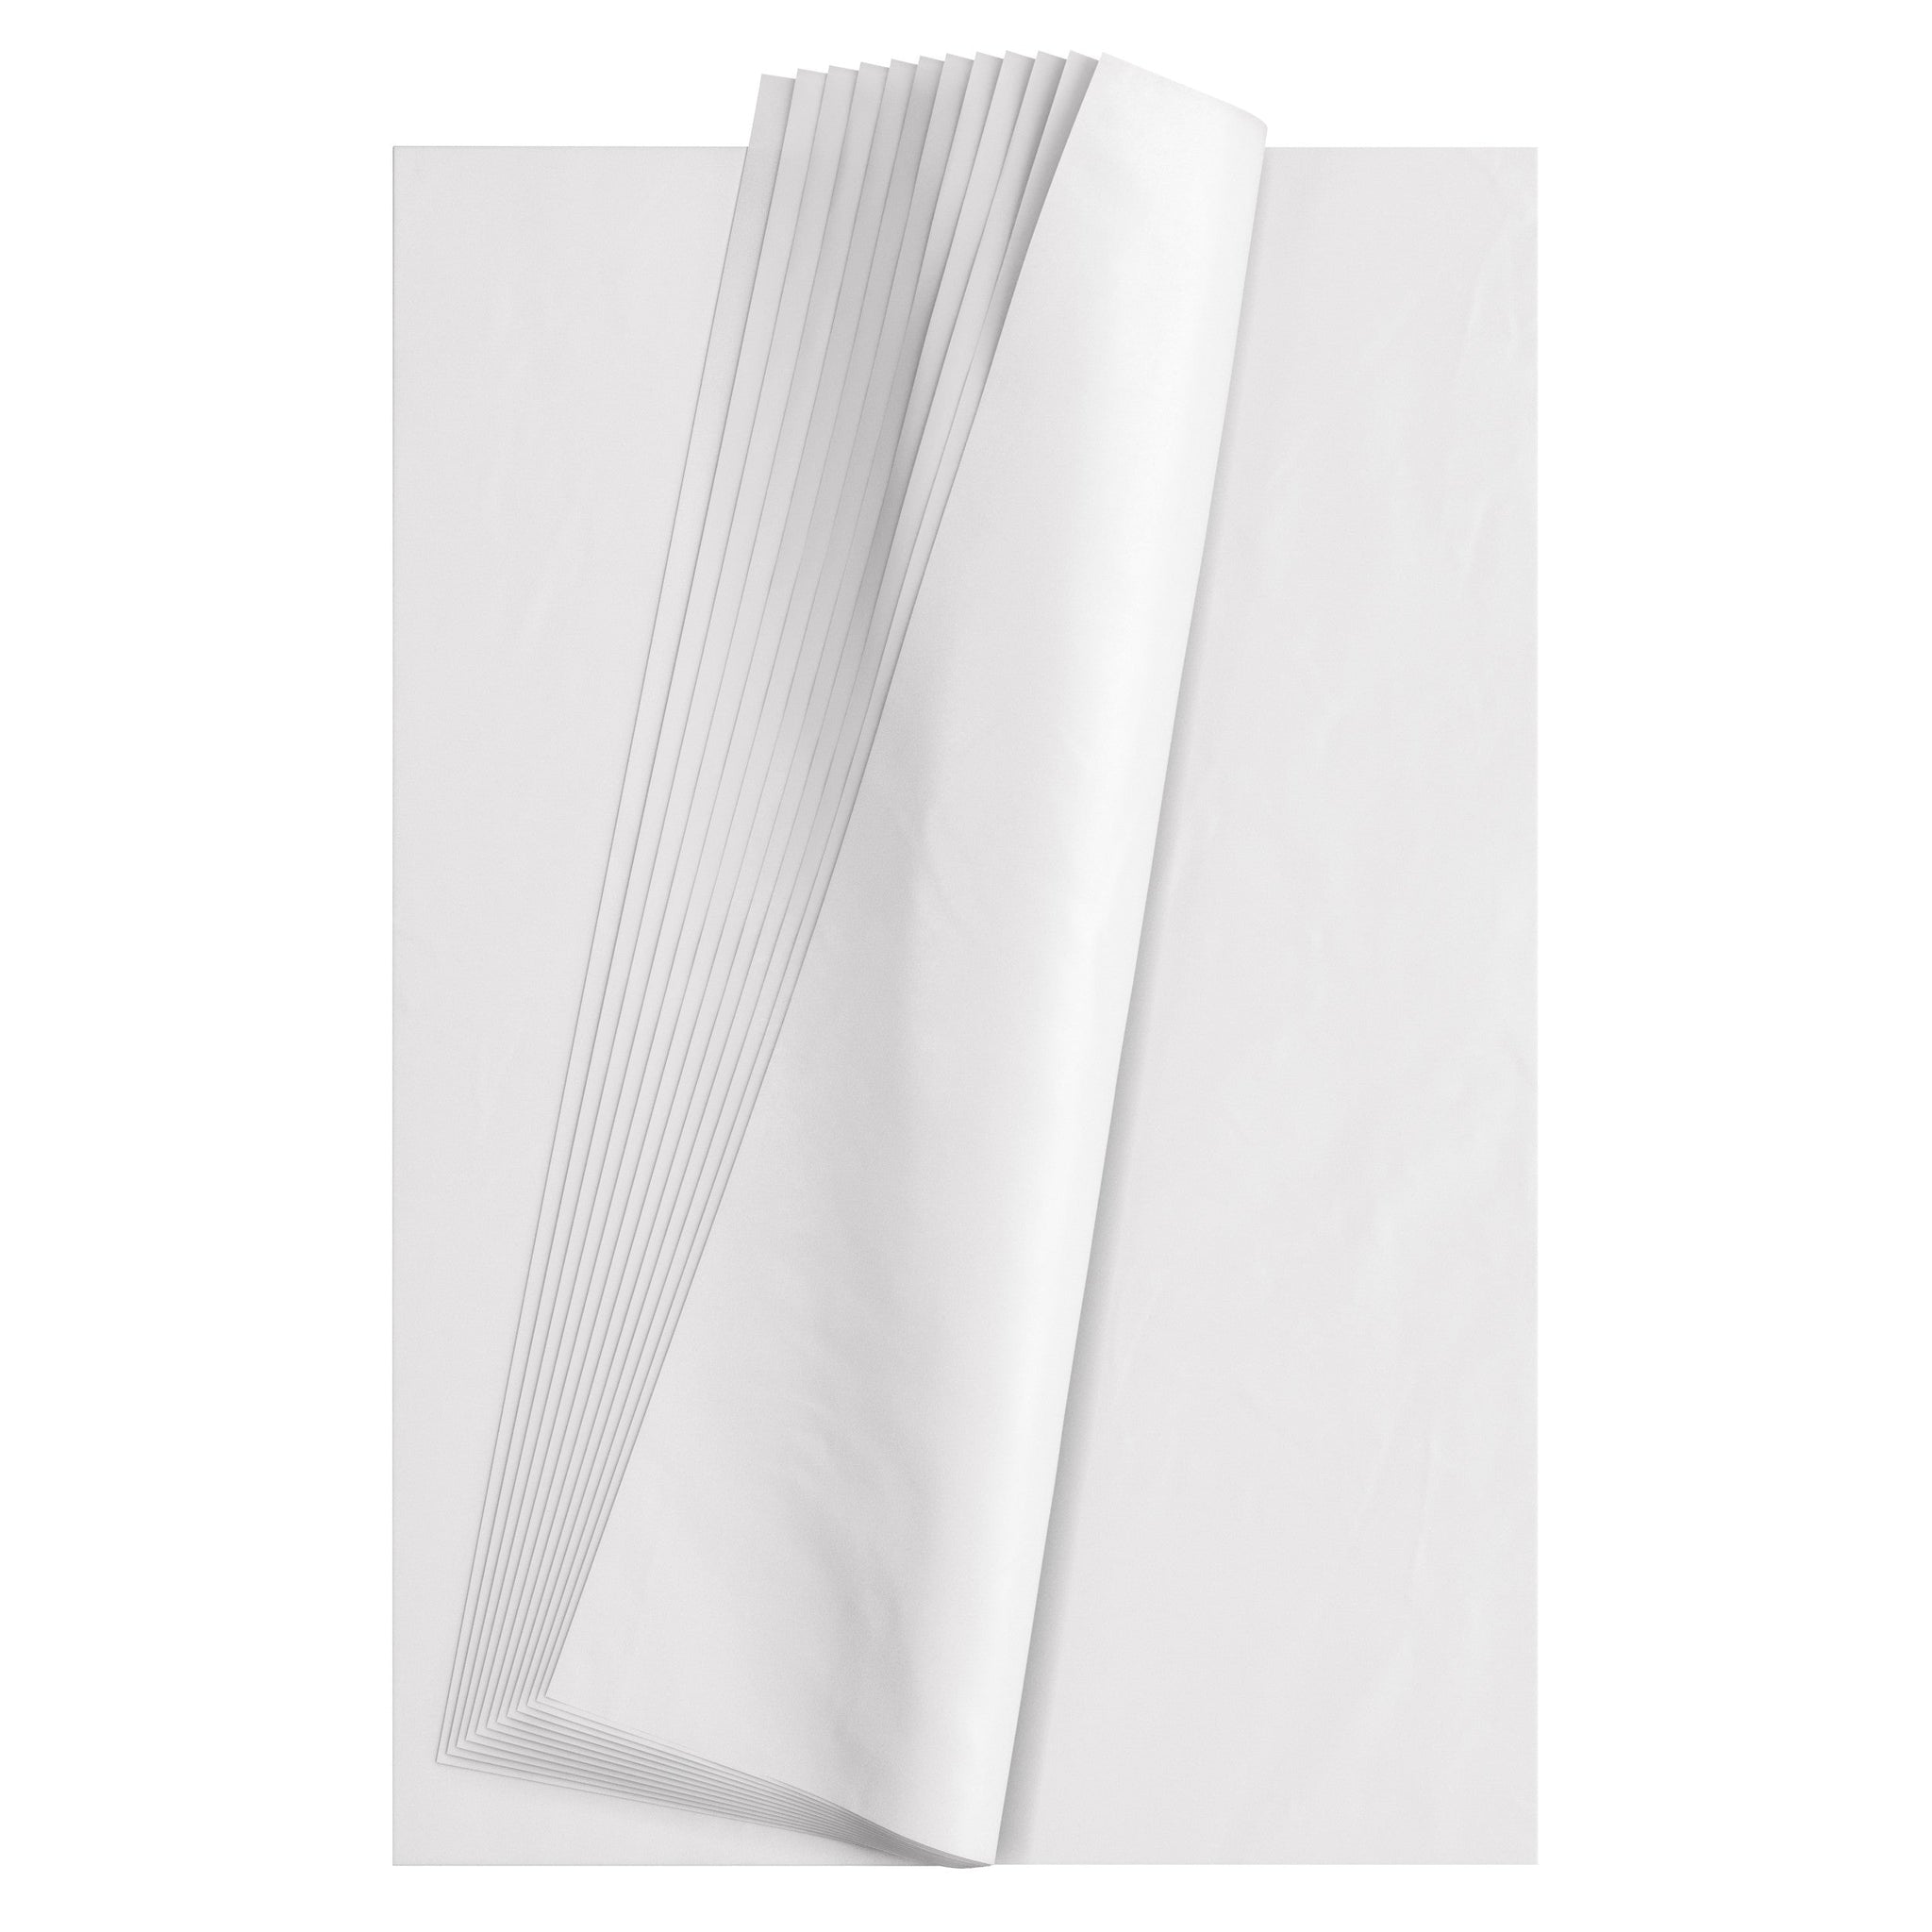 Tissue Paper Sheets - 12 x 18, White S-15430 - Uline